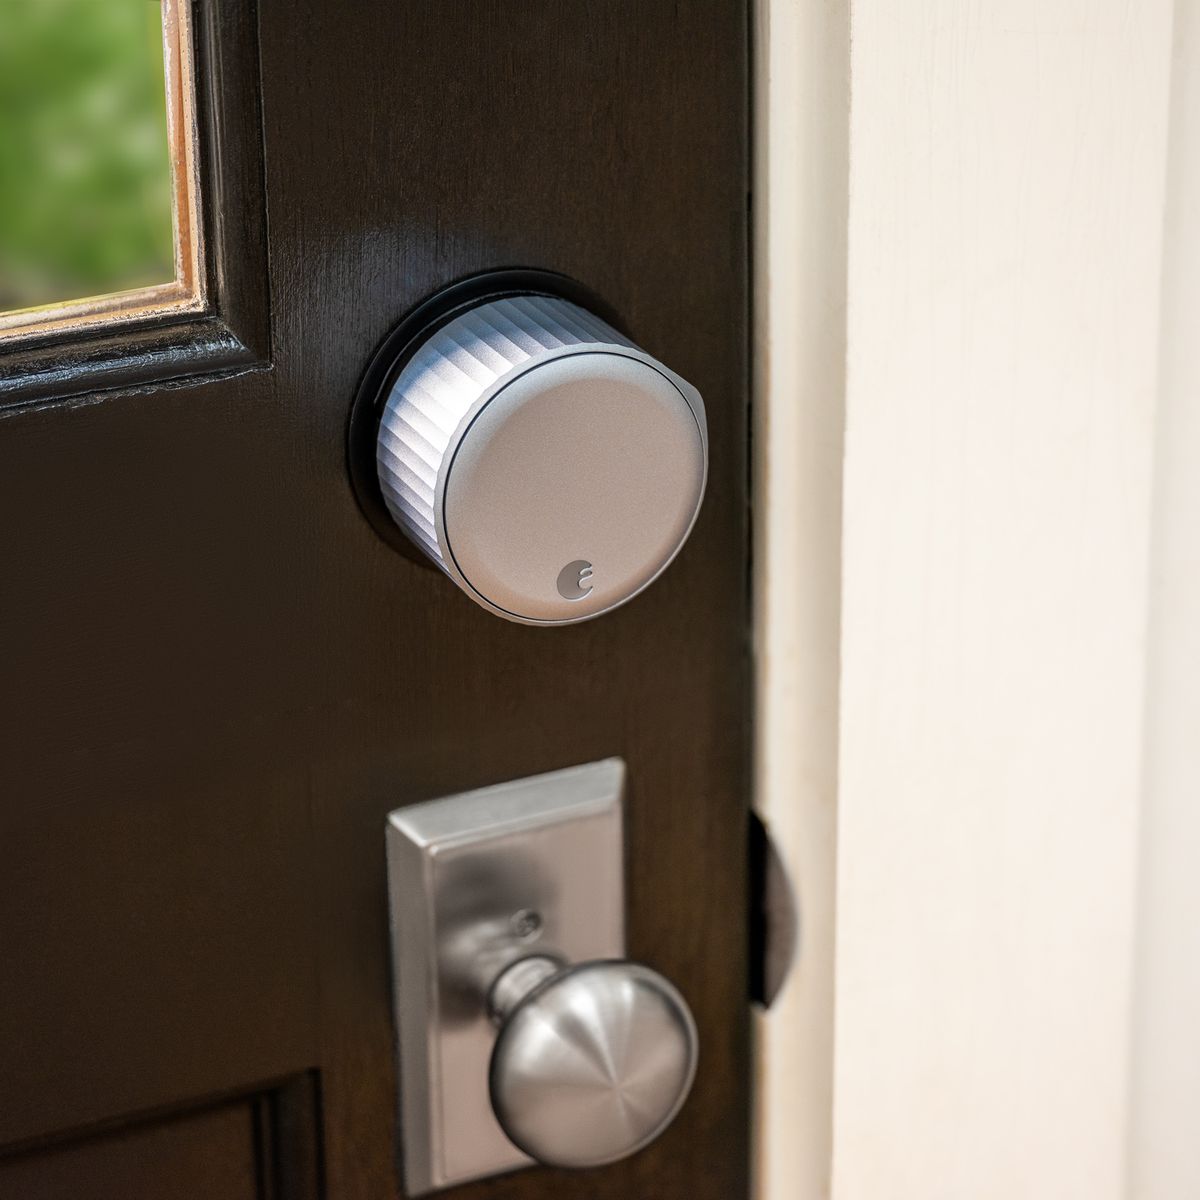 August Wi-Fi Smart Lock installato su una porta marrone